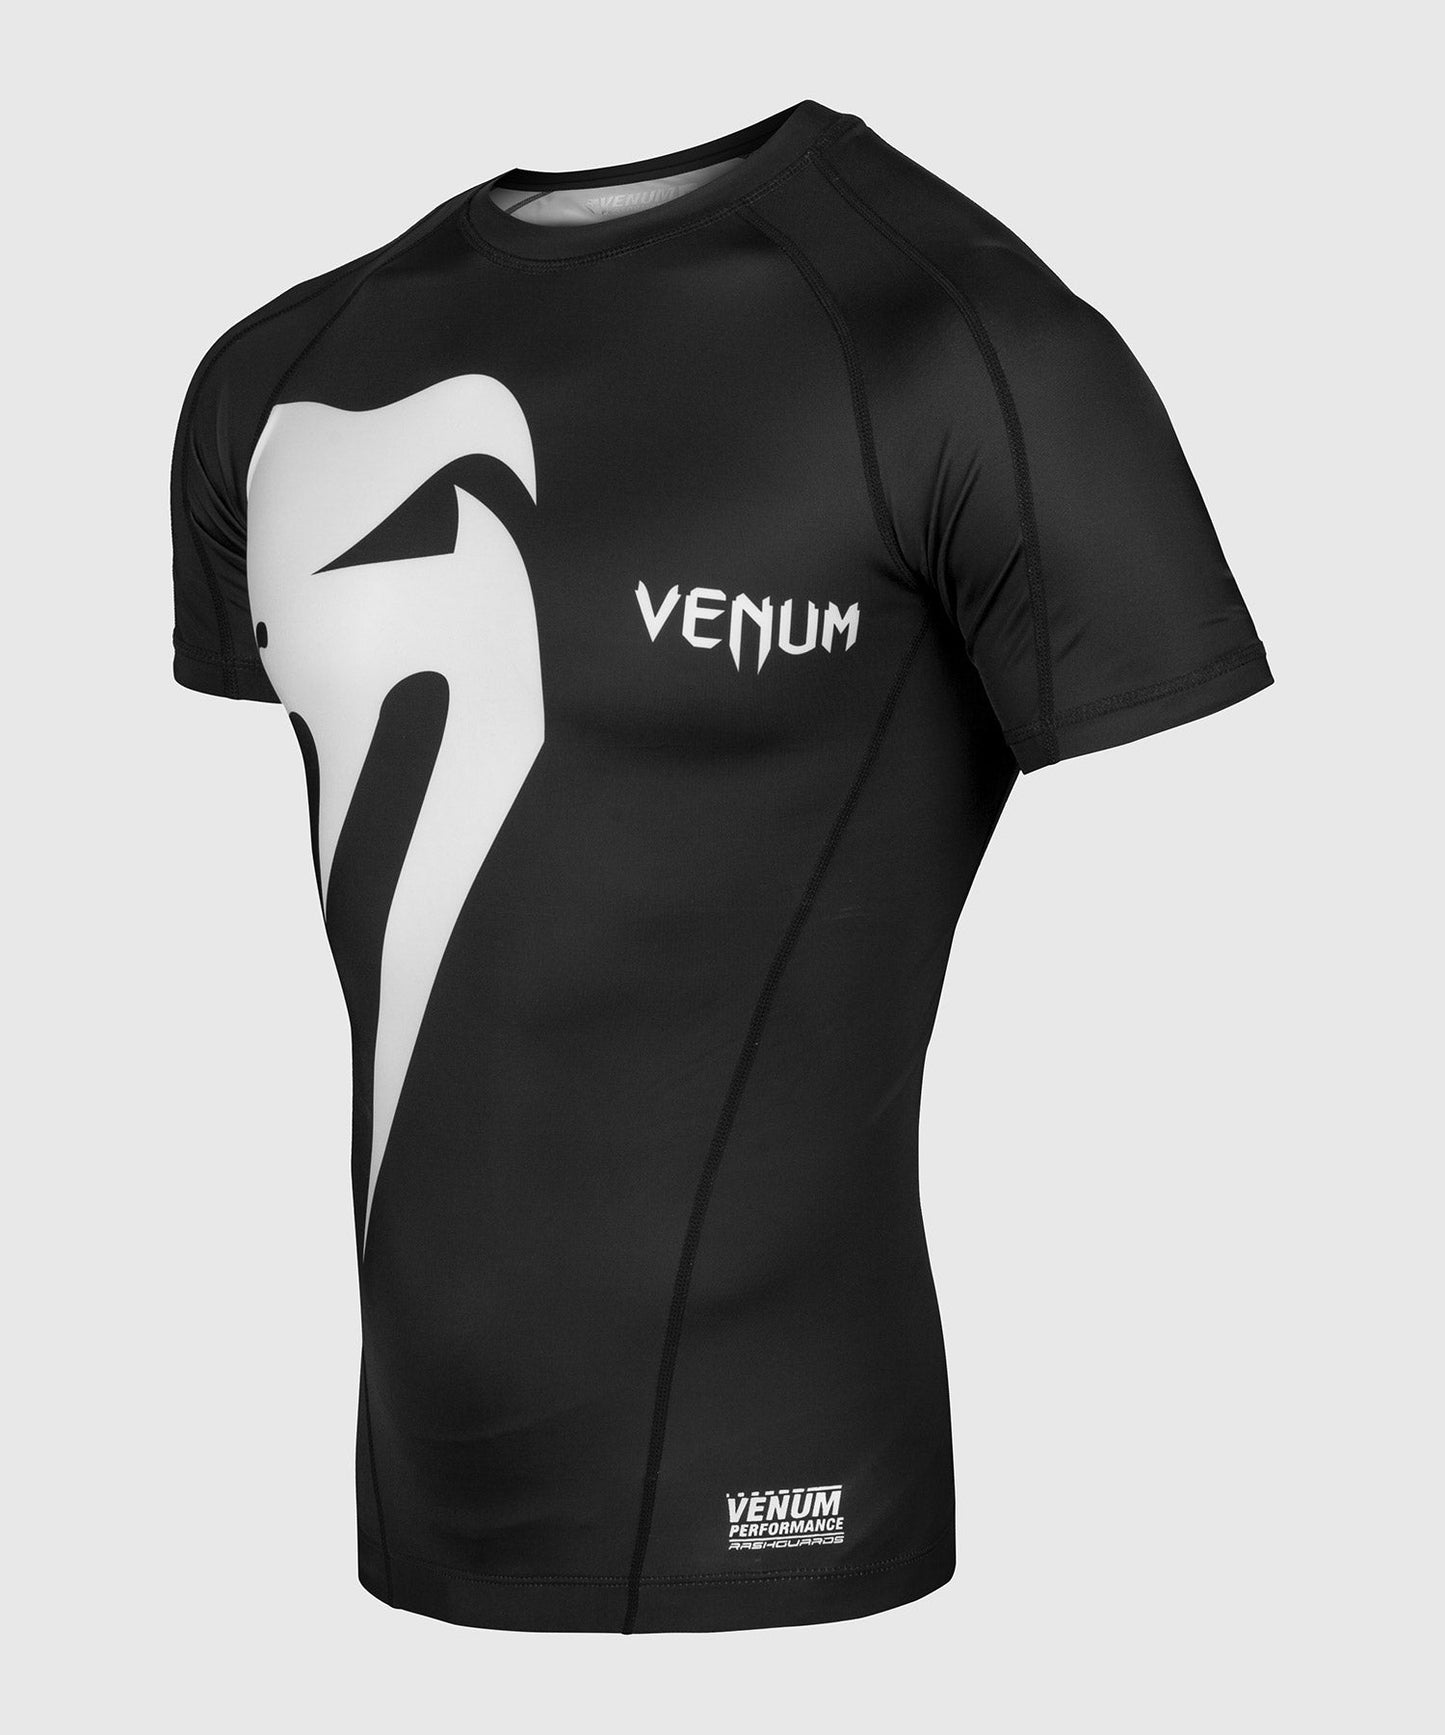 Venum Giant Rashguard - Black/White